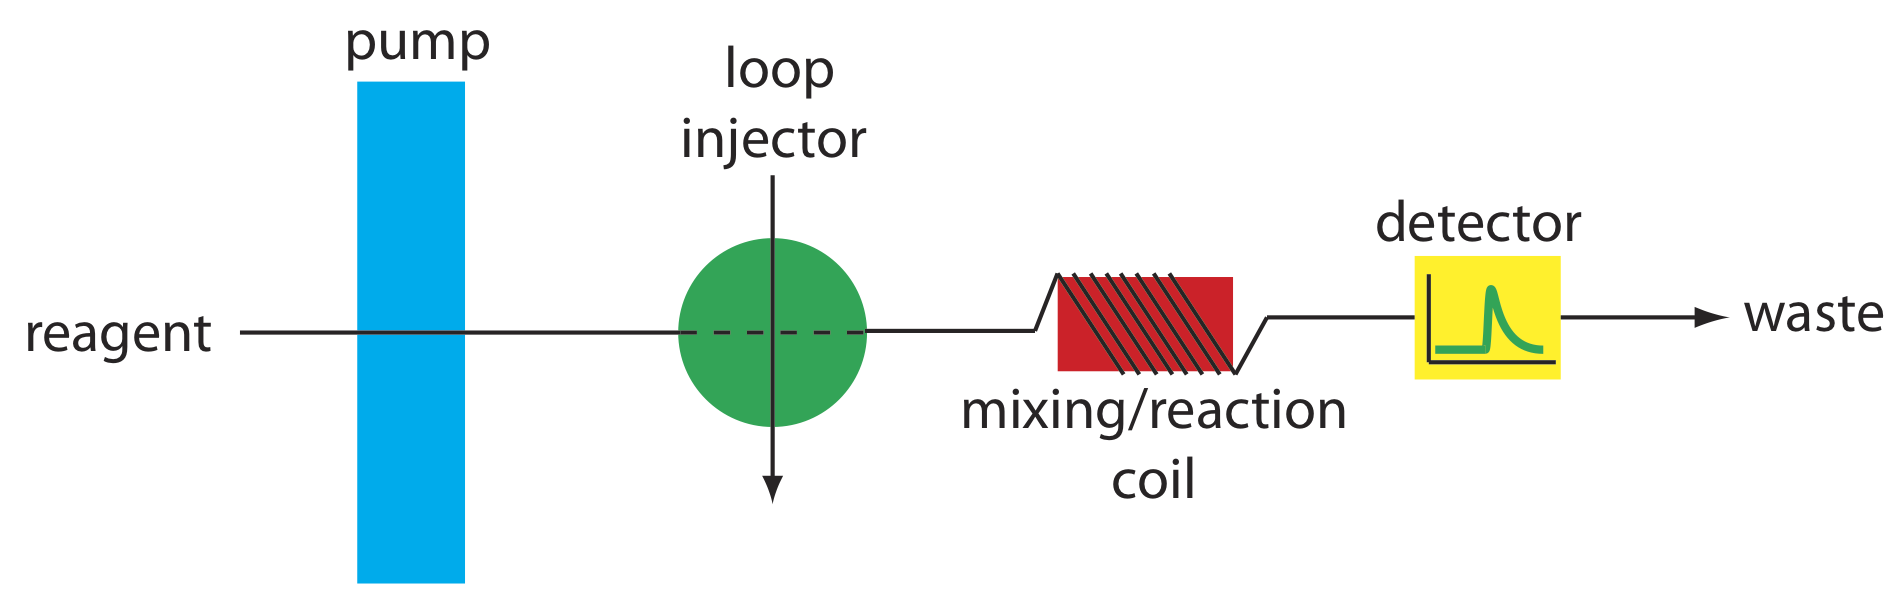 El colector único empuja el reactivo a través de una bomba, luego un inyector de bucle, a una bobina de mezcla/reacción, luego a un detector y terminando con desechos.